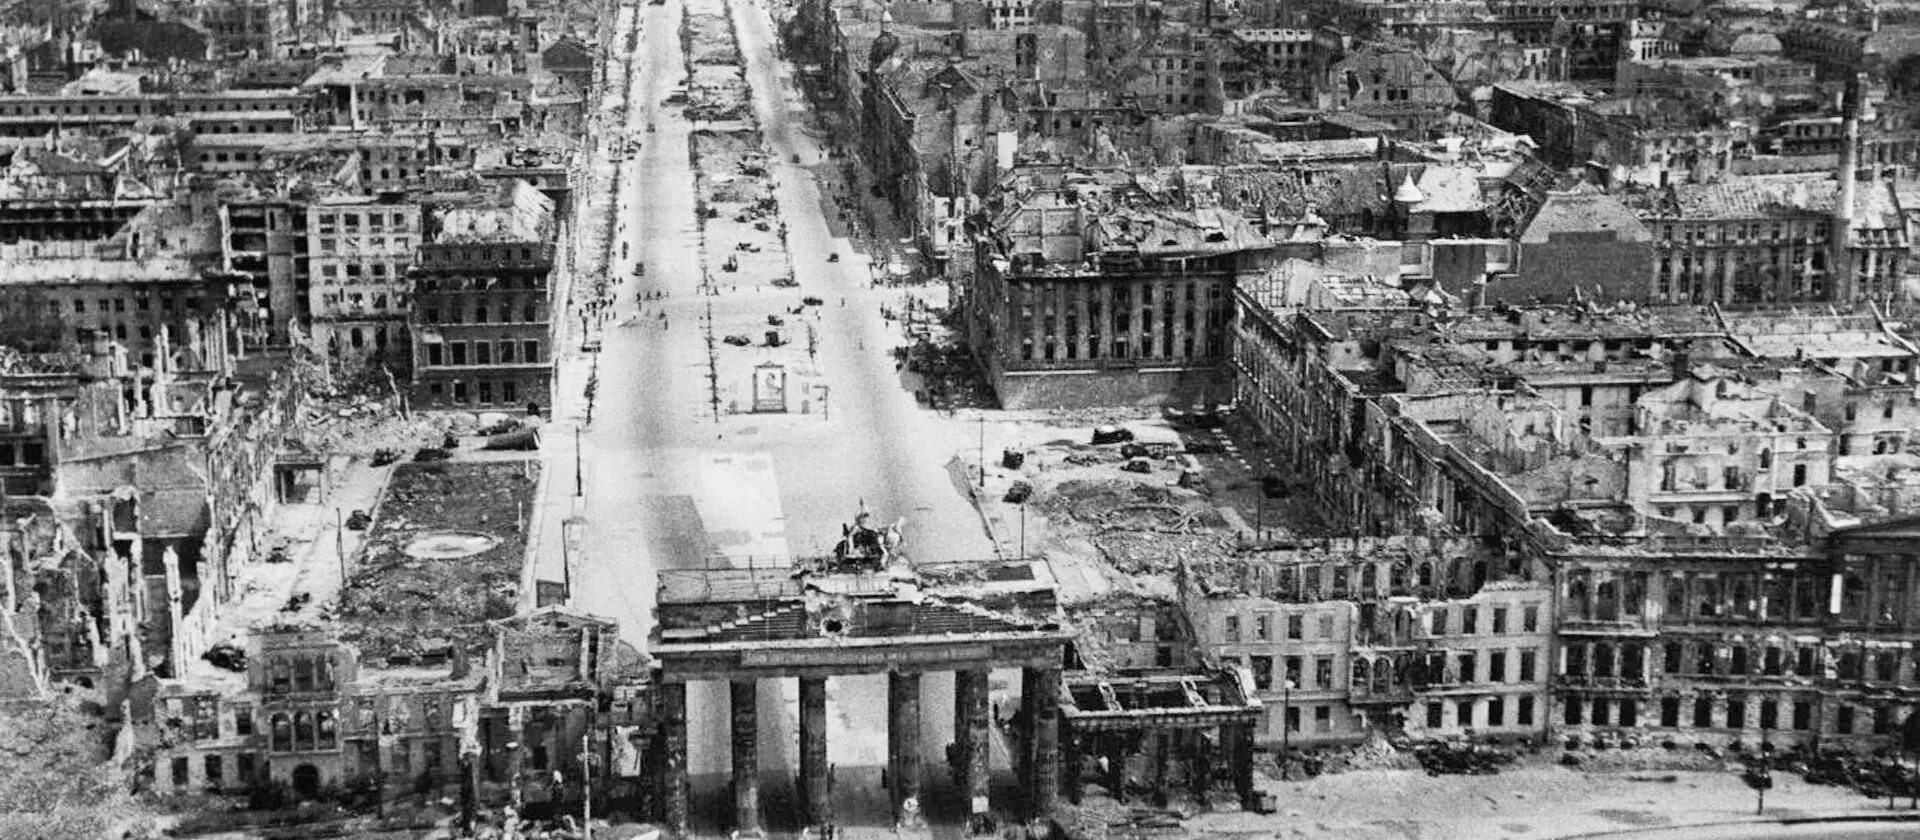 История создания песни берлин берлин. Берлин город 1945. Берлин после войны 1945. Разрушенный Берлин 1945.